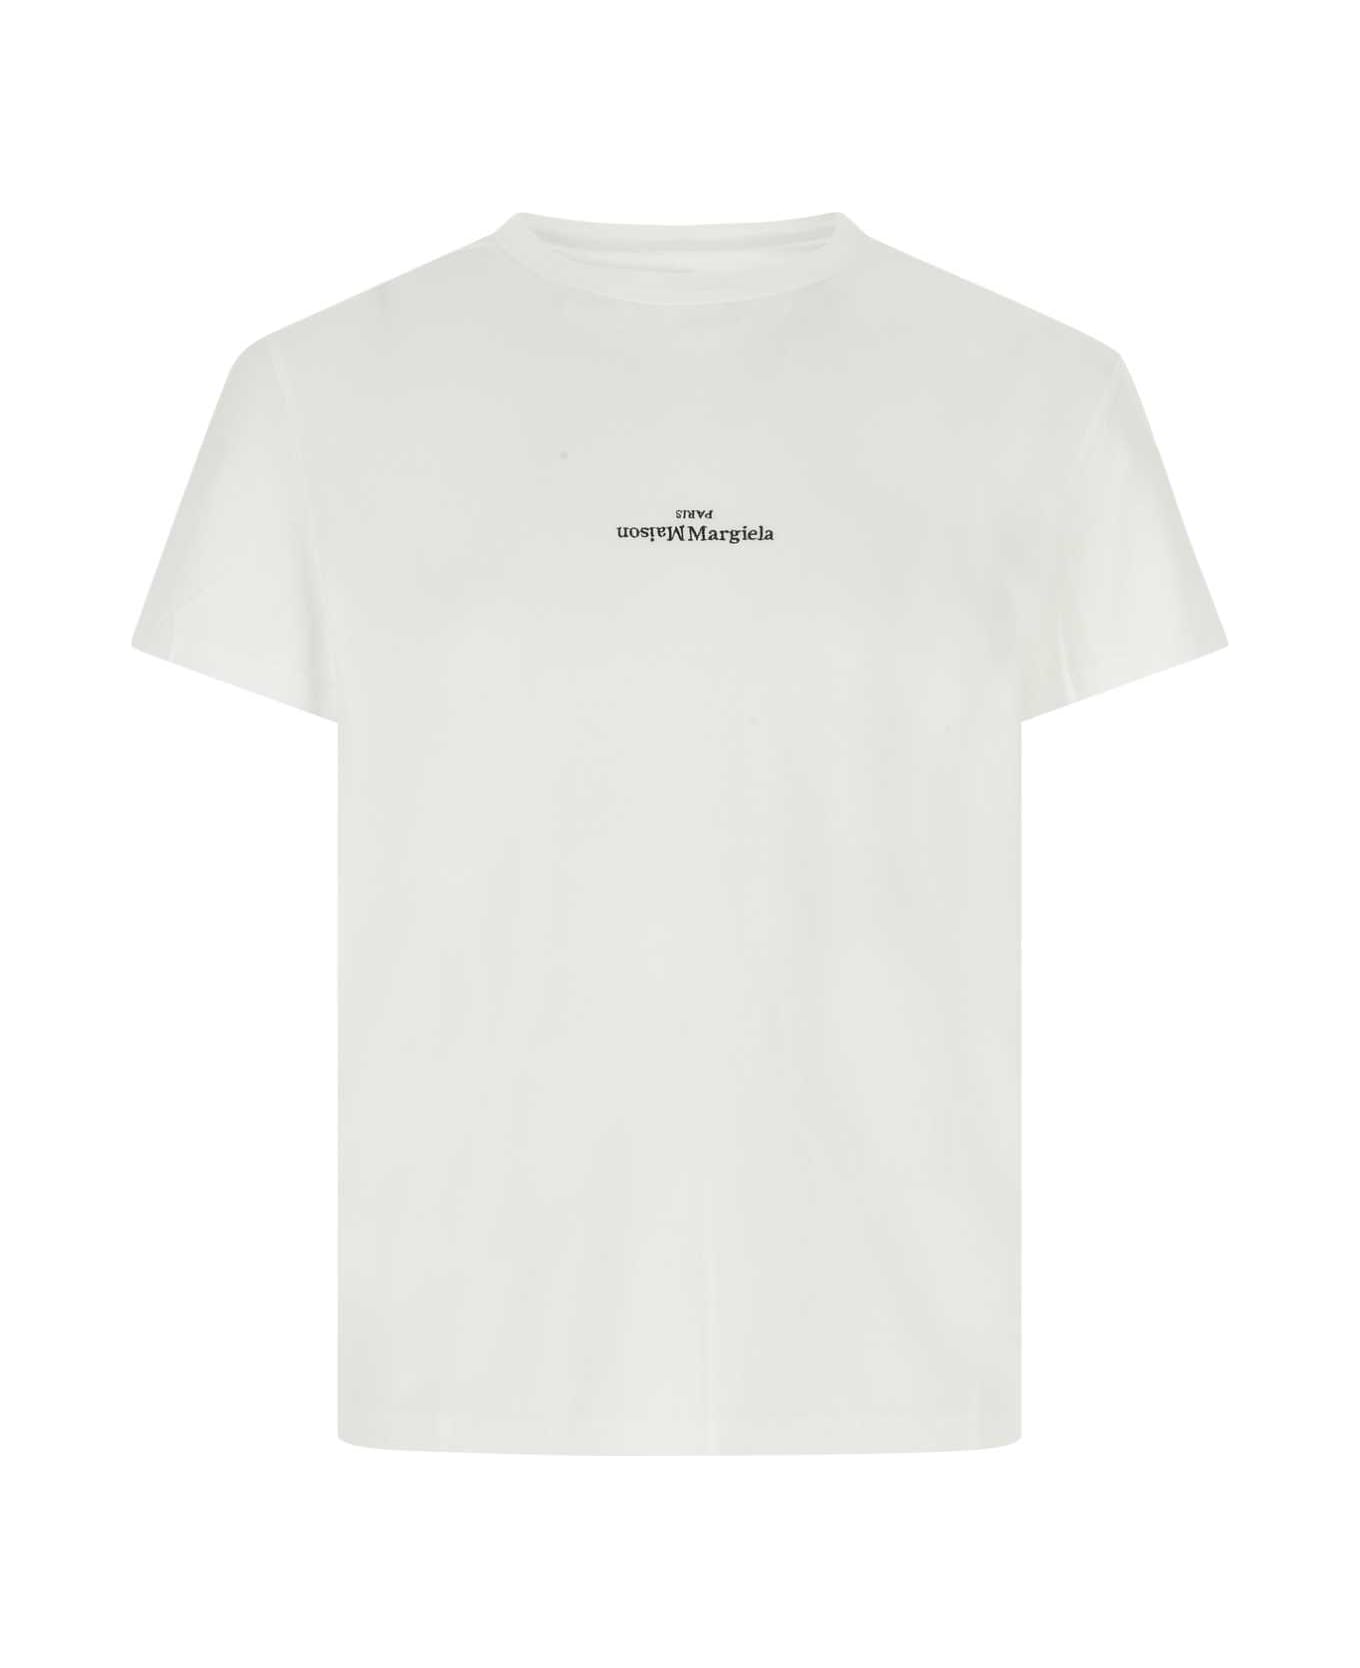 Maison Margiela White Cotton T-shirt - 994